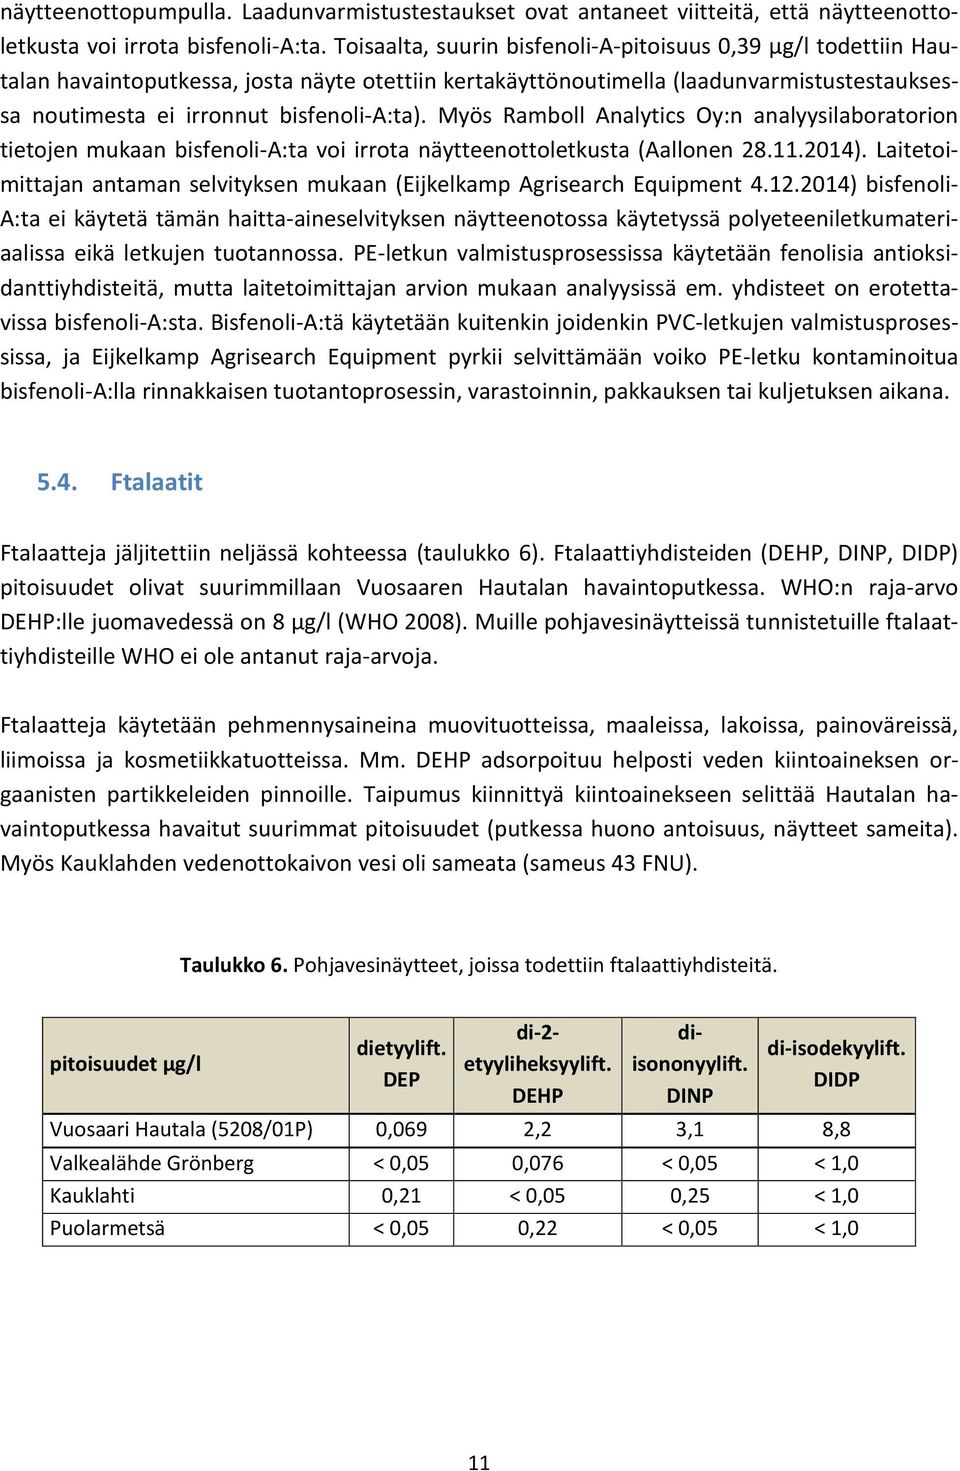 Myös Ramboll Analytics Oy:n analyysilaboratorion tietojen mukaan bisfenoli-a:ta voi irrota näytteenottoletkusta (Aallonen 28.11.2014).